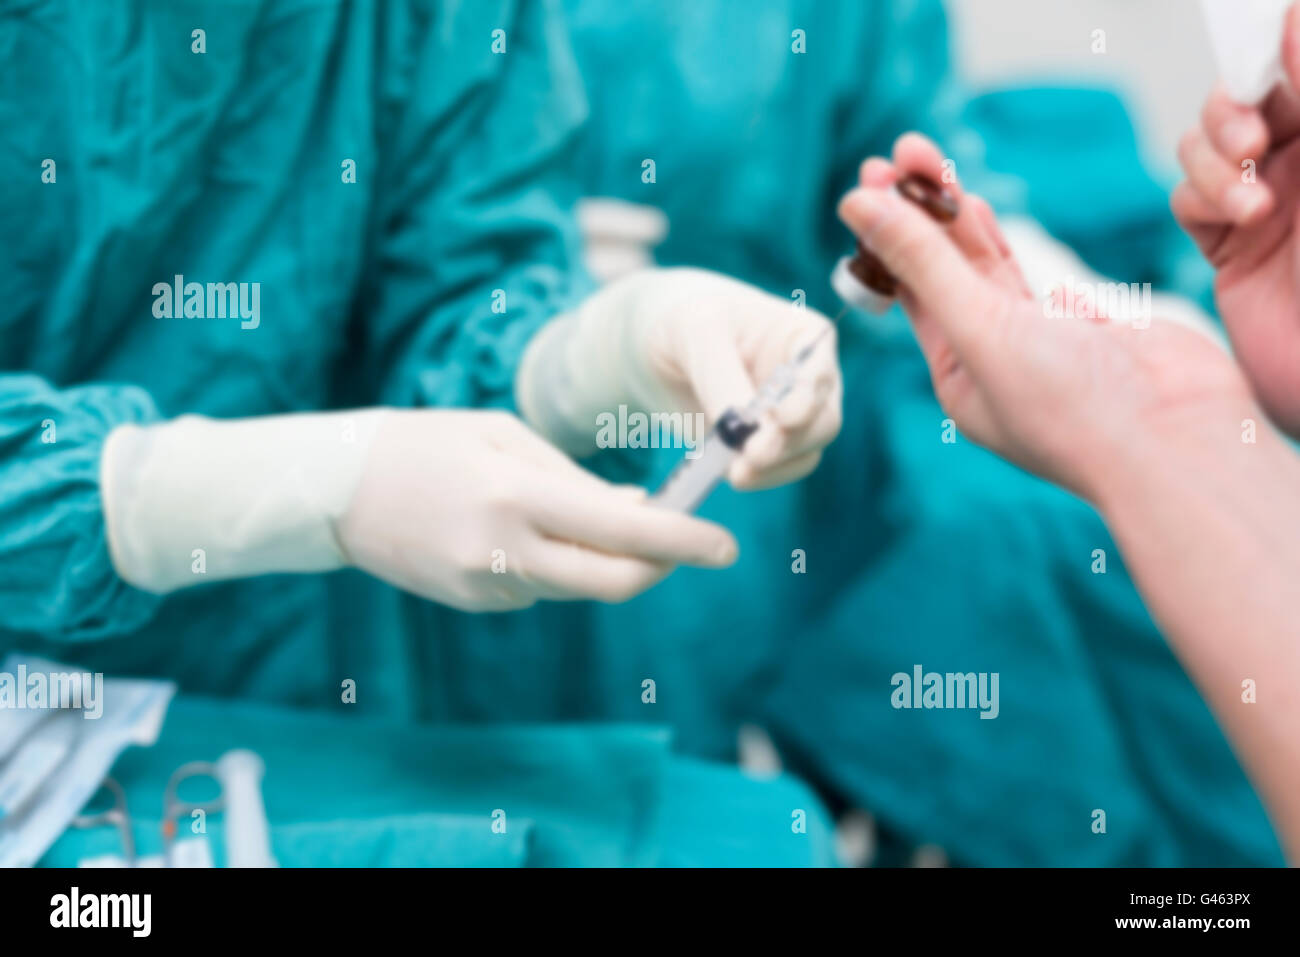 Peeling-Krankenschwester, die chirurgische Instrumente für den Betrieb vorbereiten Stockfoto